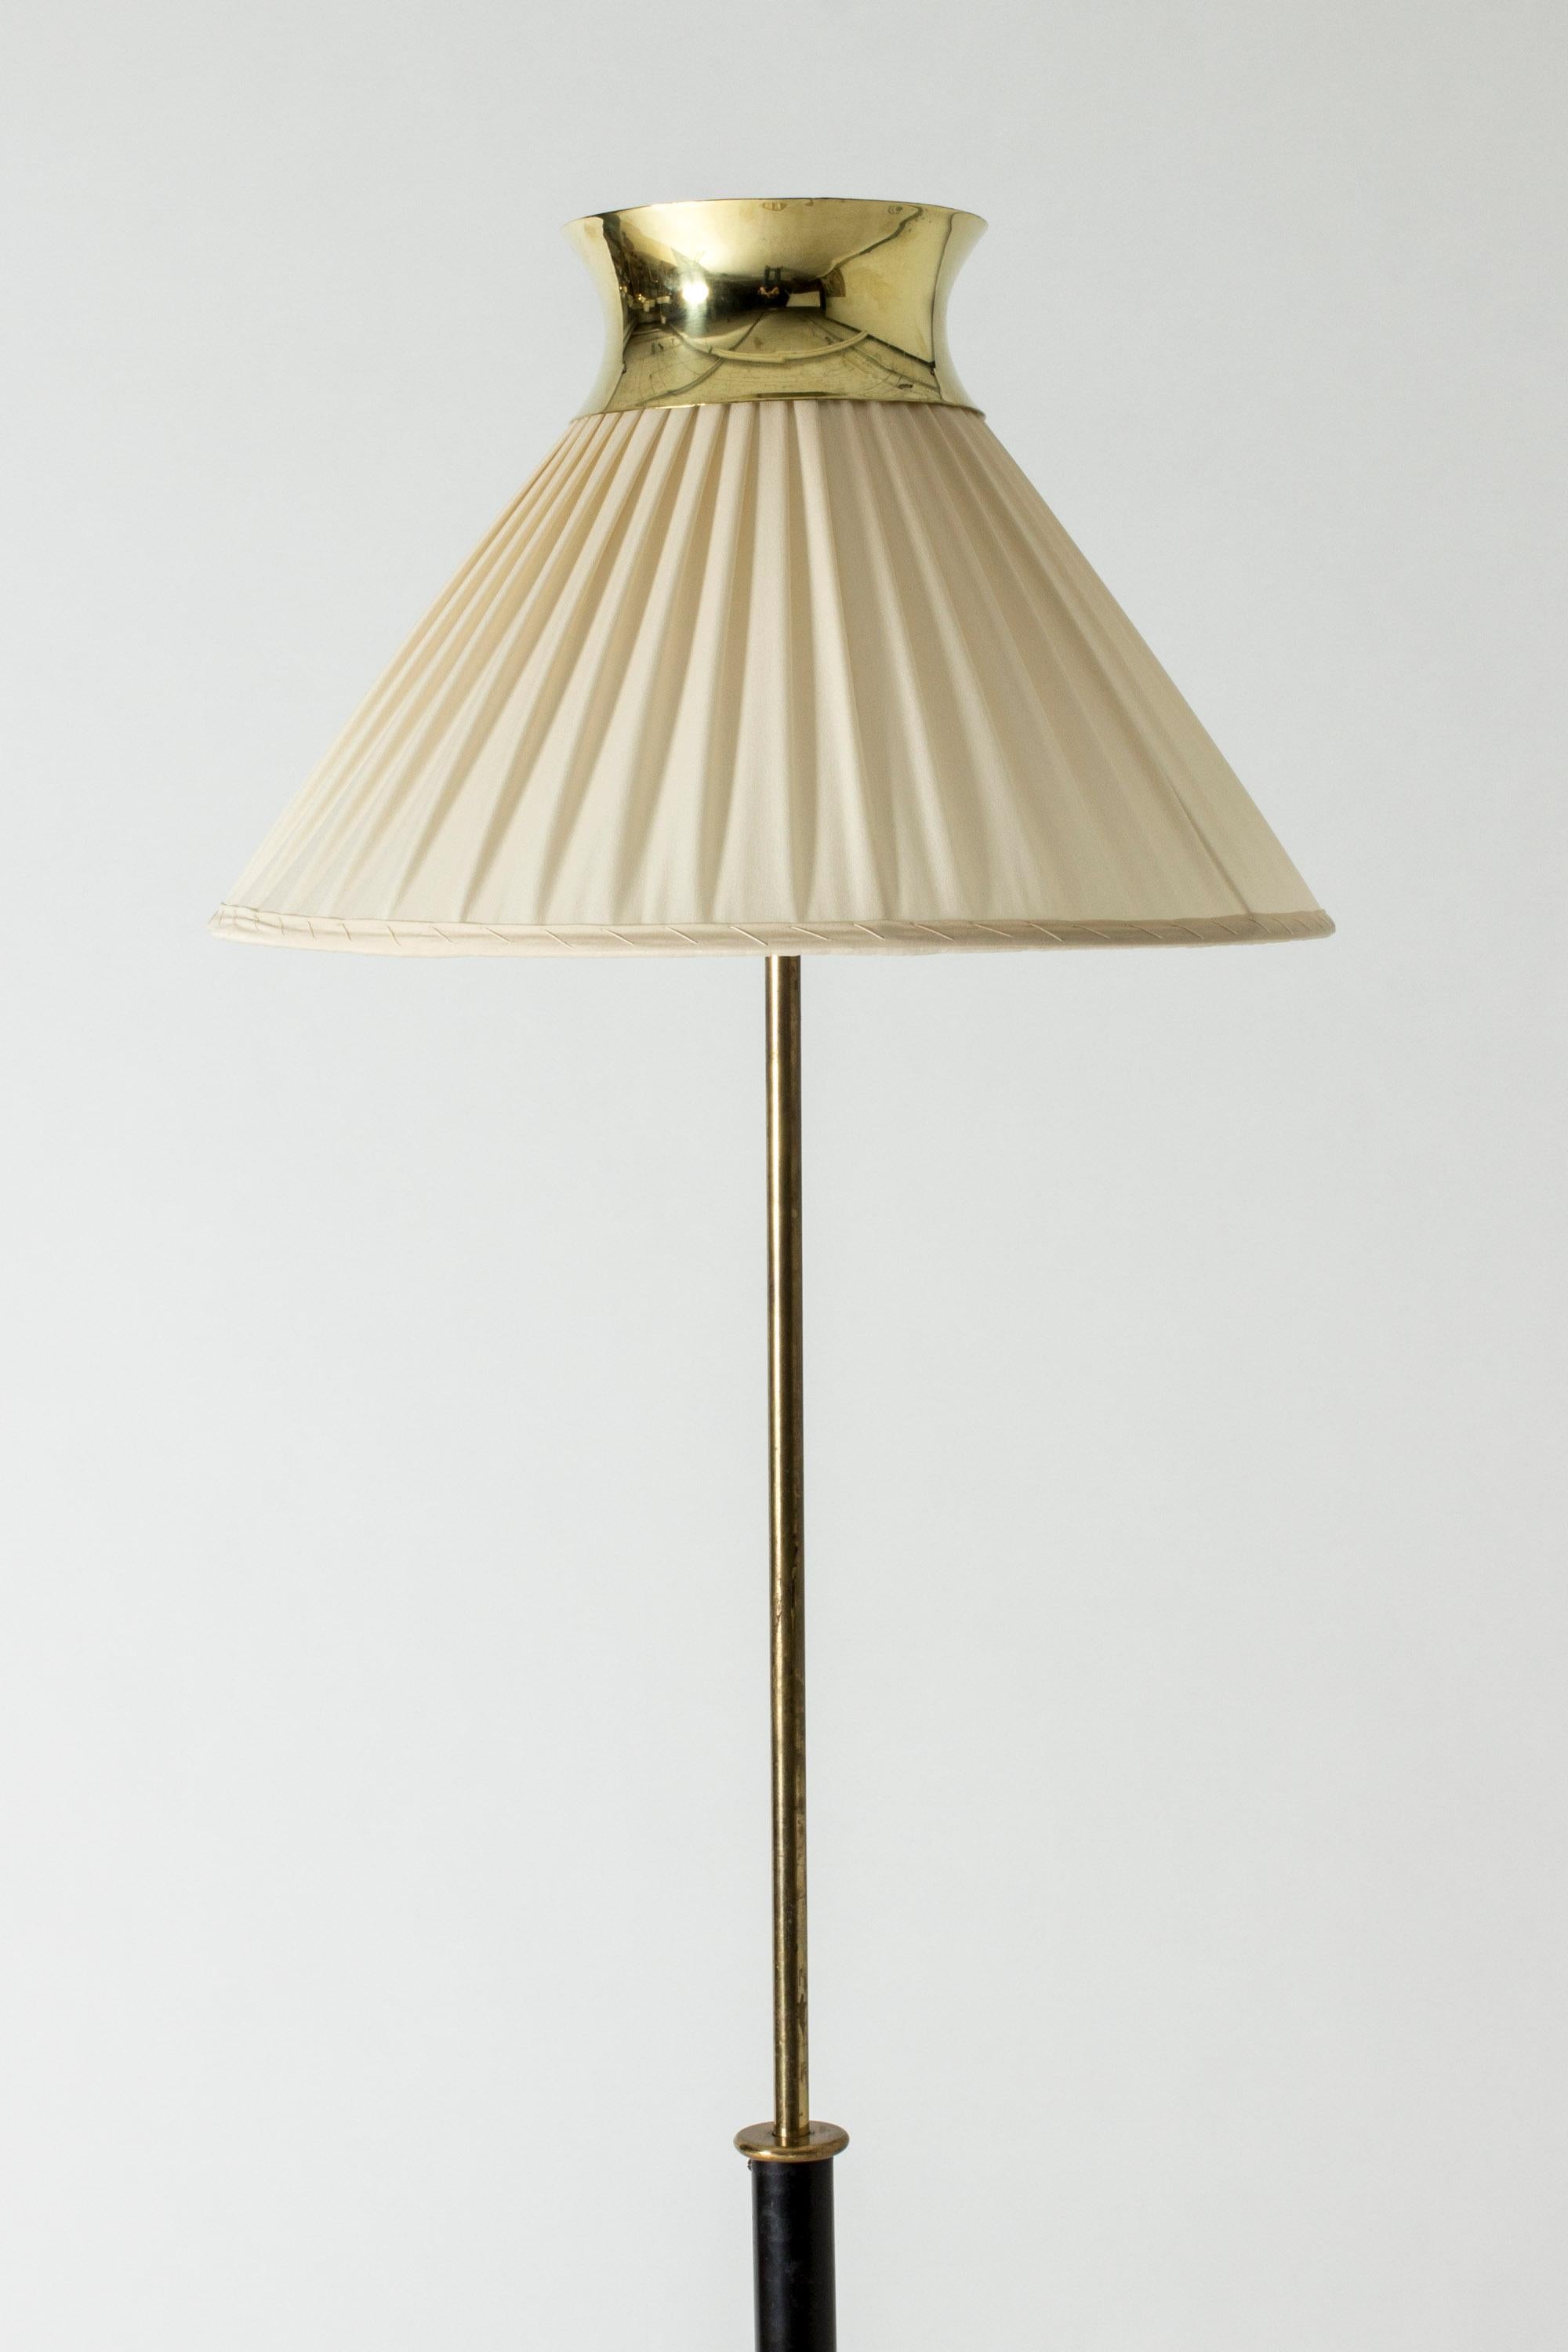 Scandinavian Modern Rare Floor Lamp by Josef Frank for Svenskt Tenn, Sweden, 1950s For Sale